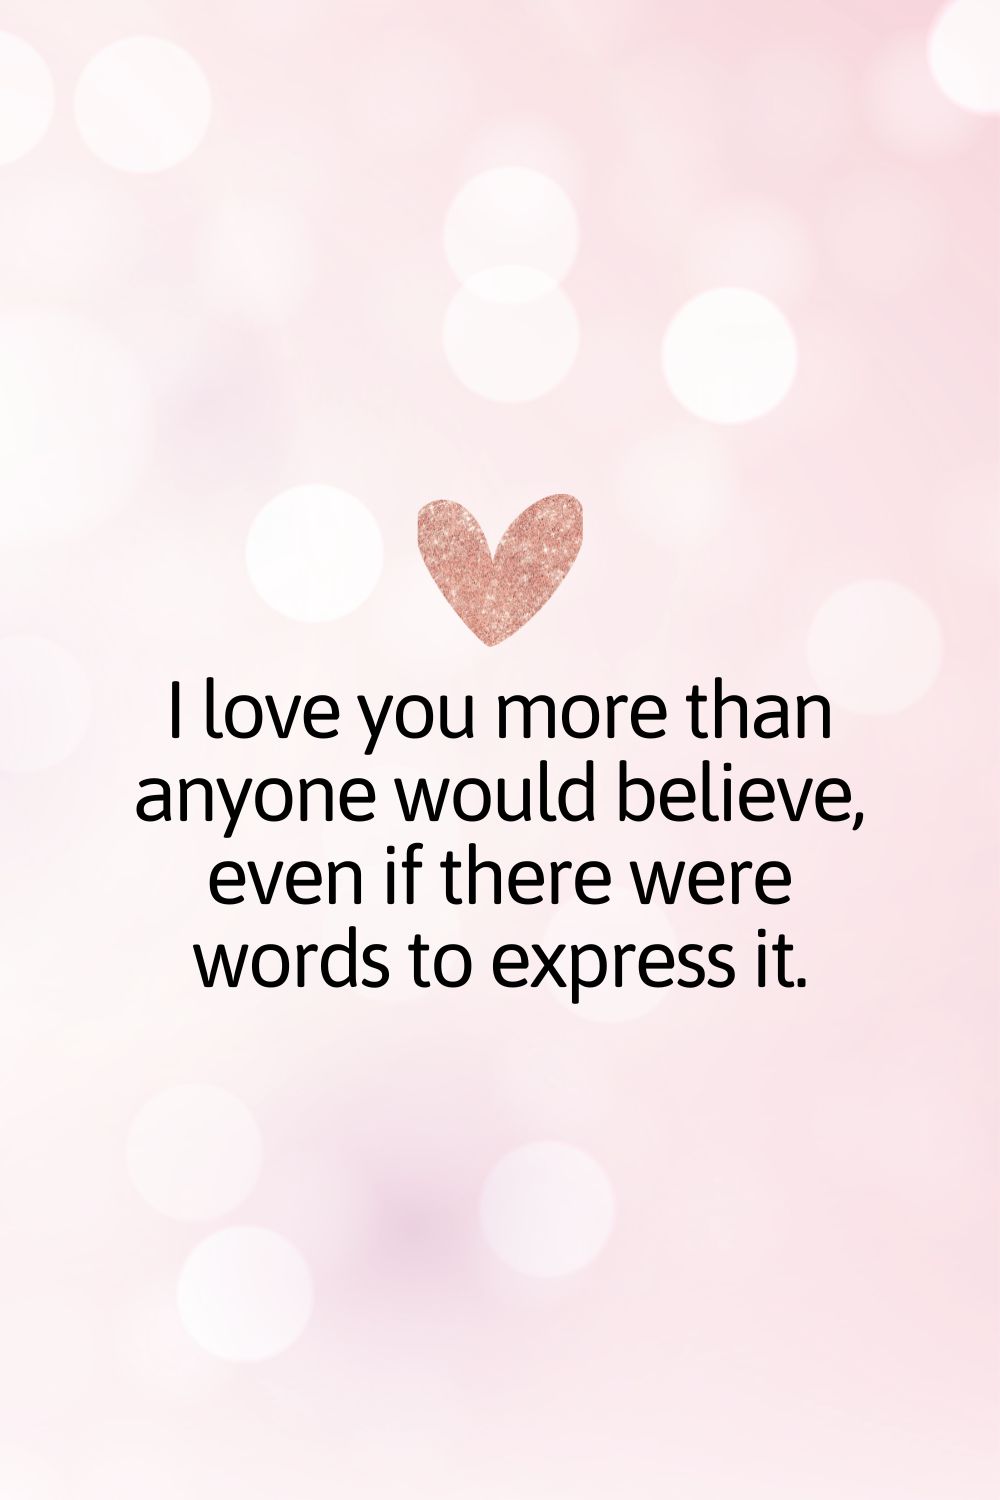 Te quiero más de lo que nadie creería, aunque hubiera palabras para expresarlo.